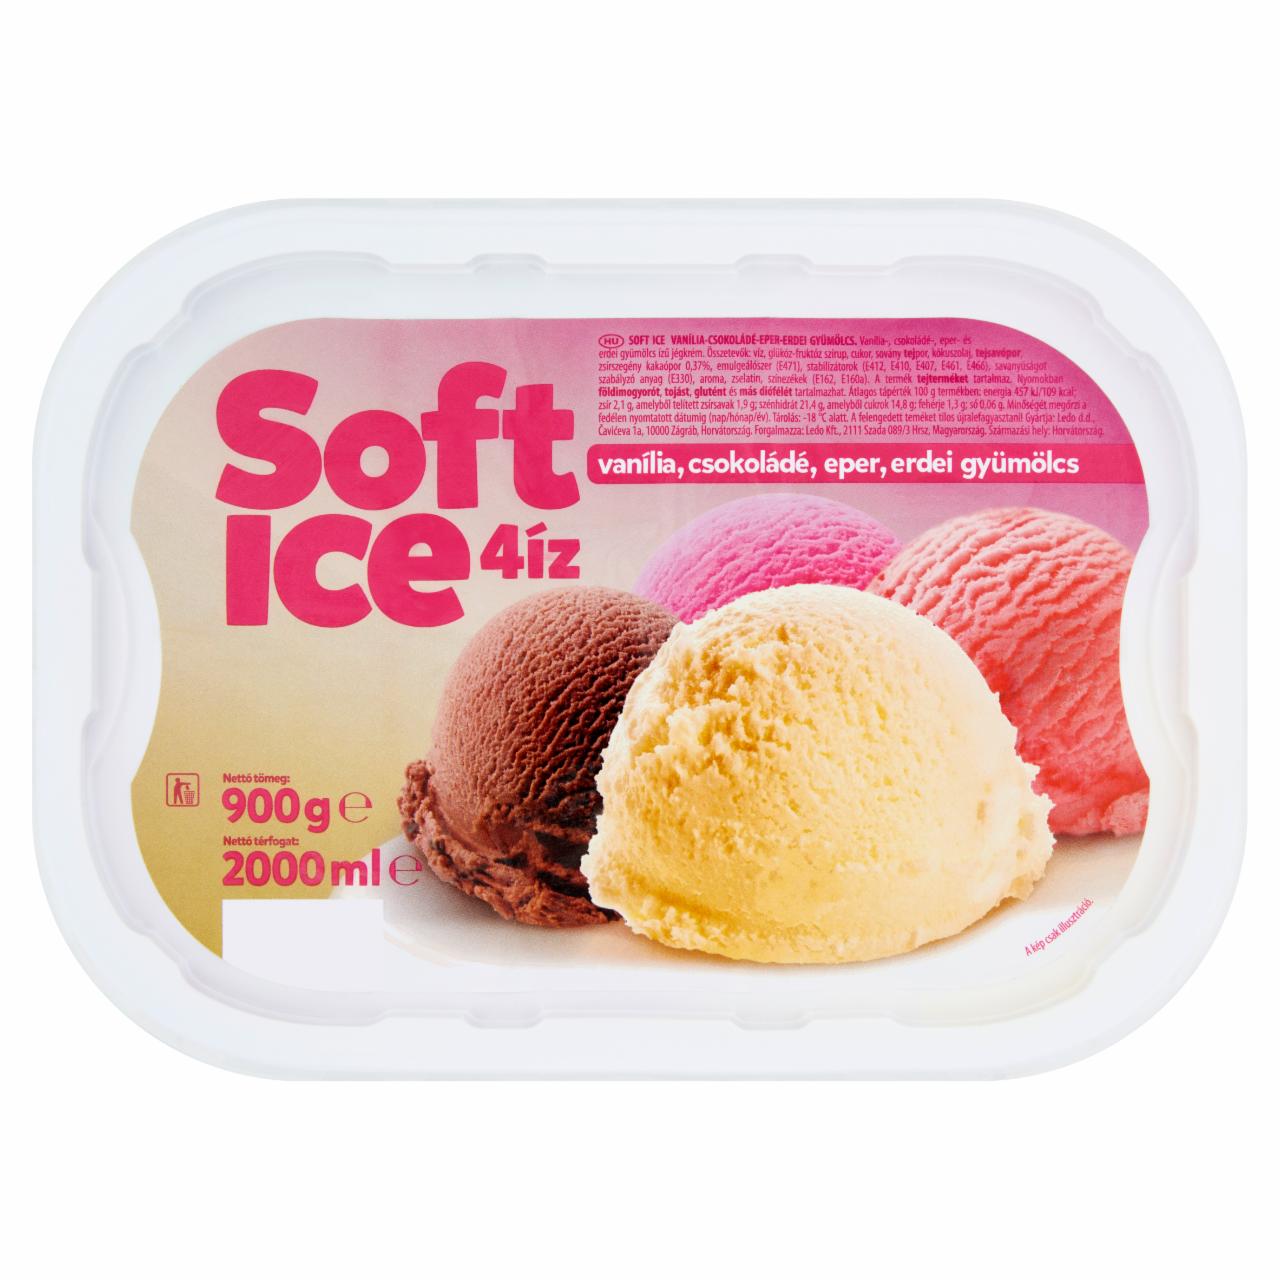 Képek - Ledo Soft Ice vanília-, csokoládé-, eper- és erdei gyümölcs ízű jégkrém 2000 ml